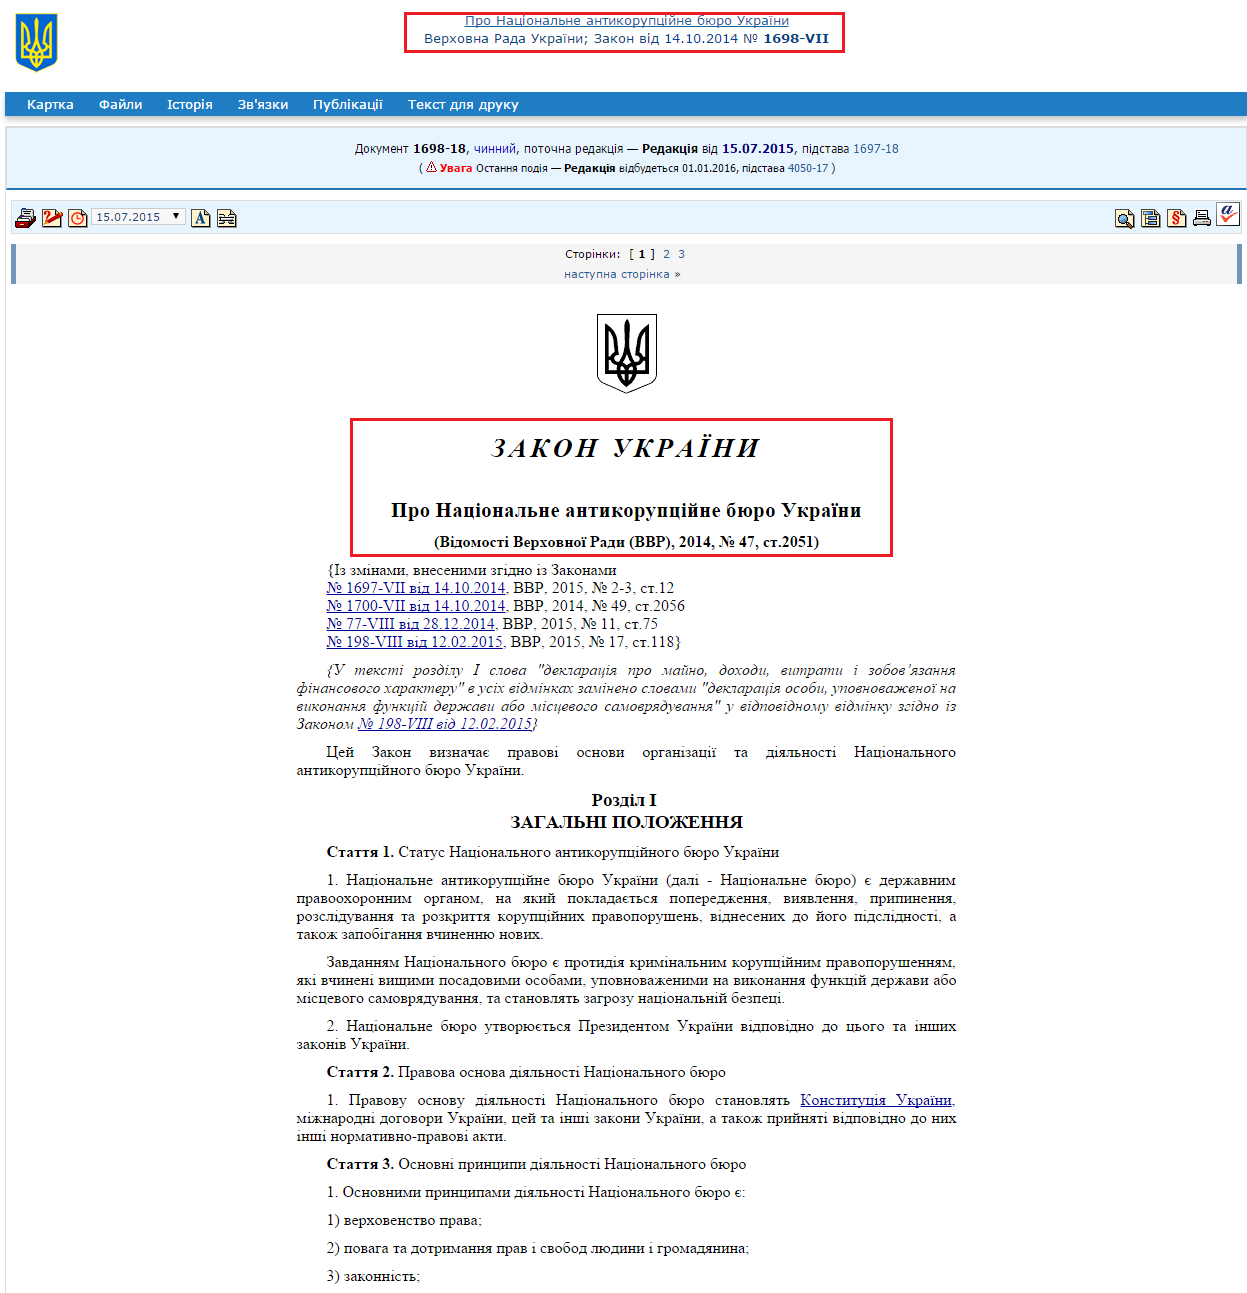 http://zakon5.rada.gov.ua/laws/show/1698-vii